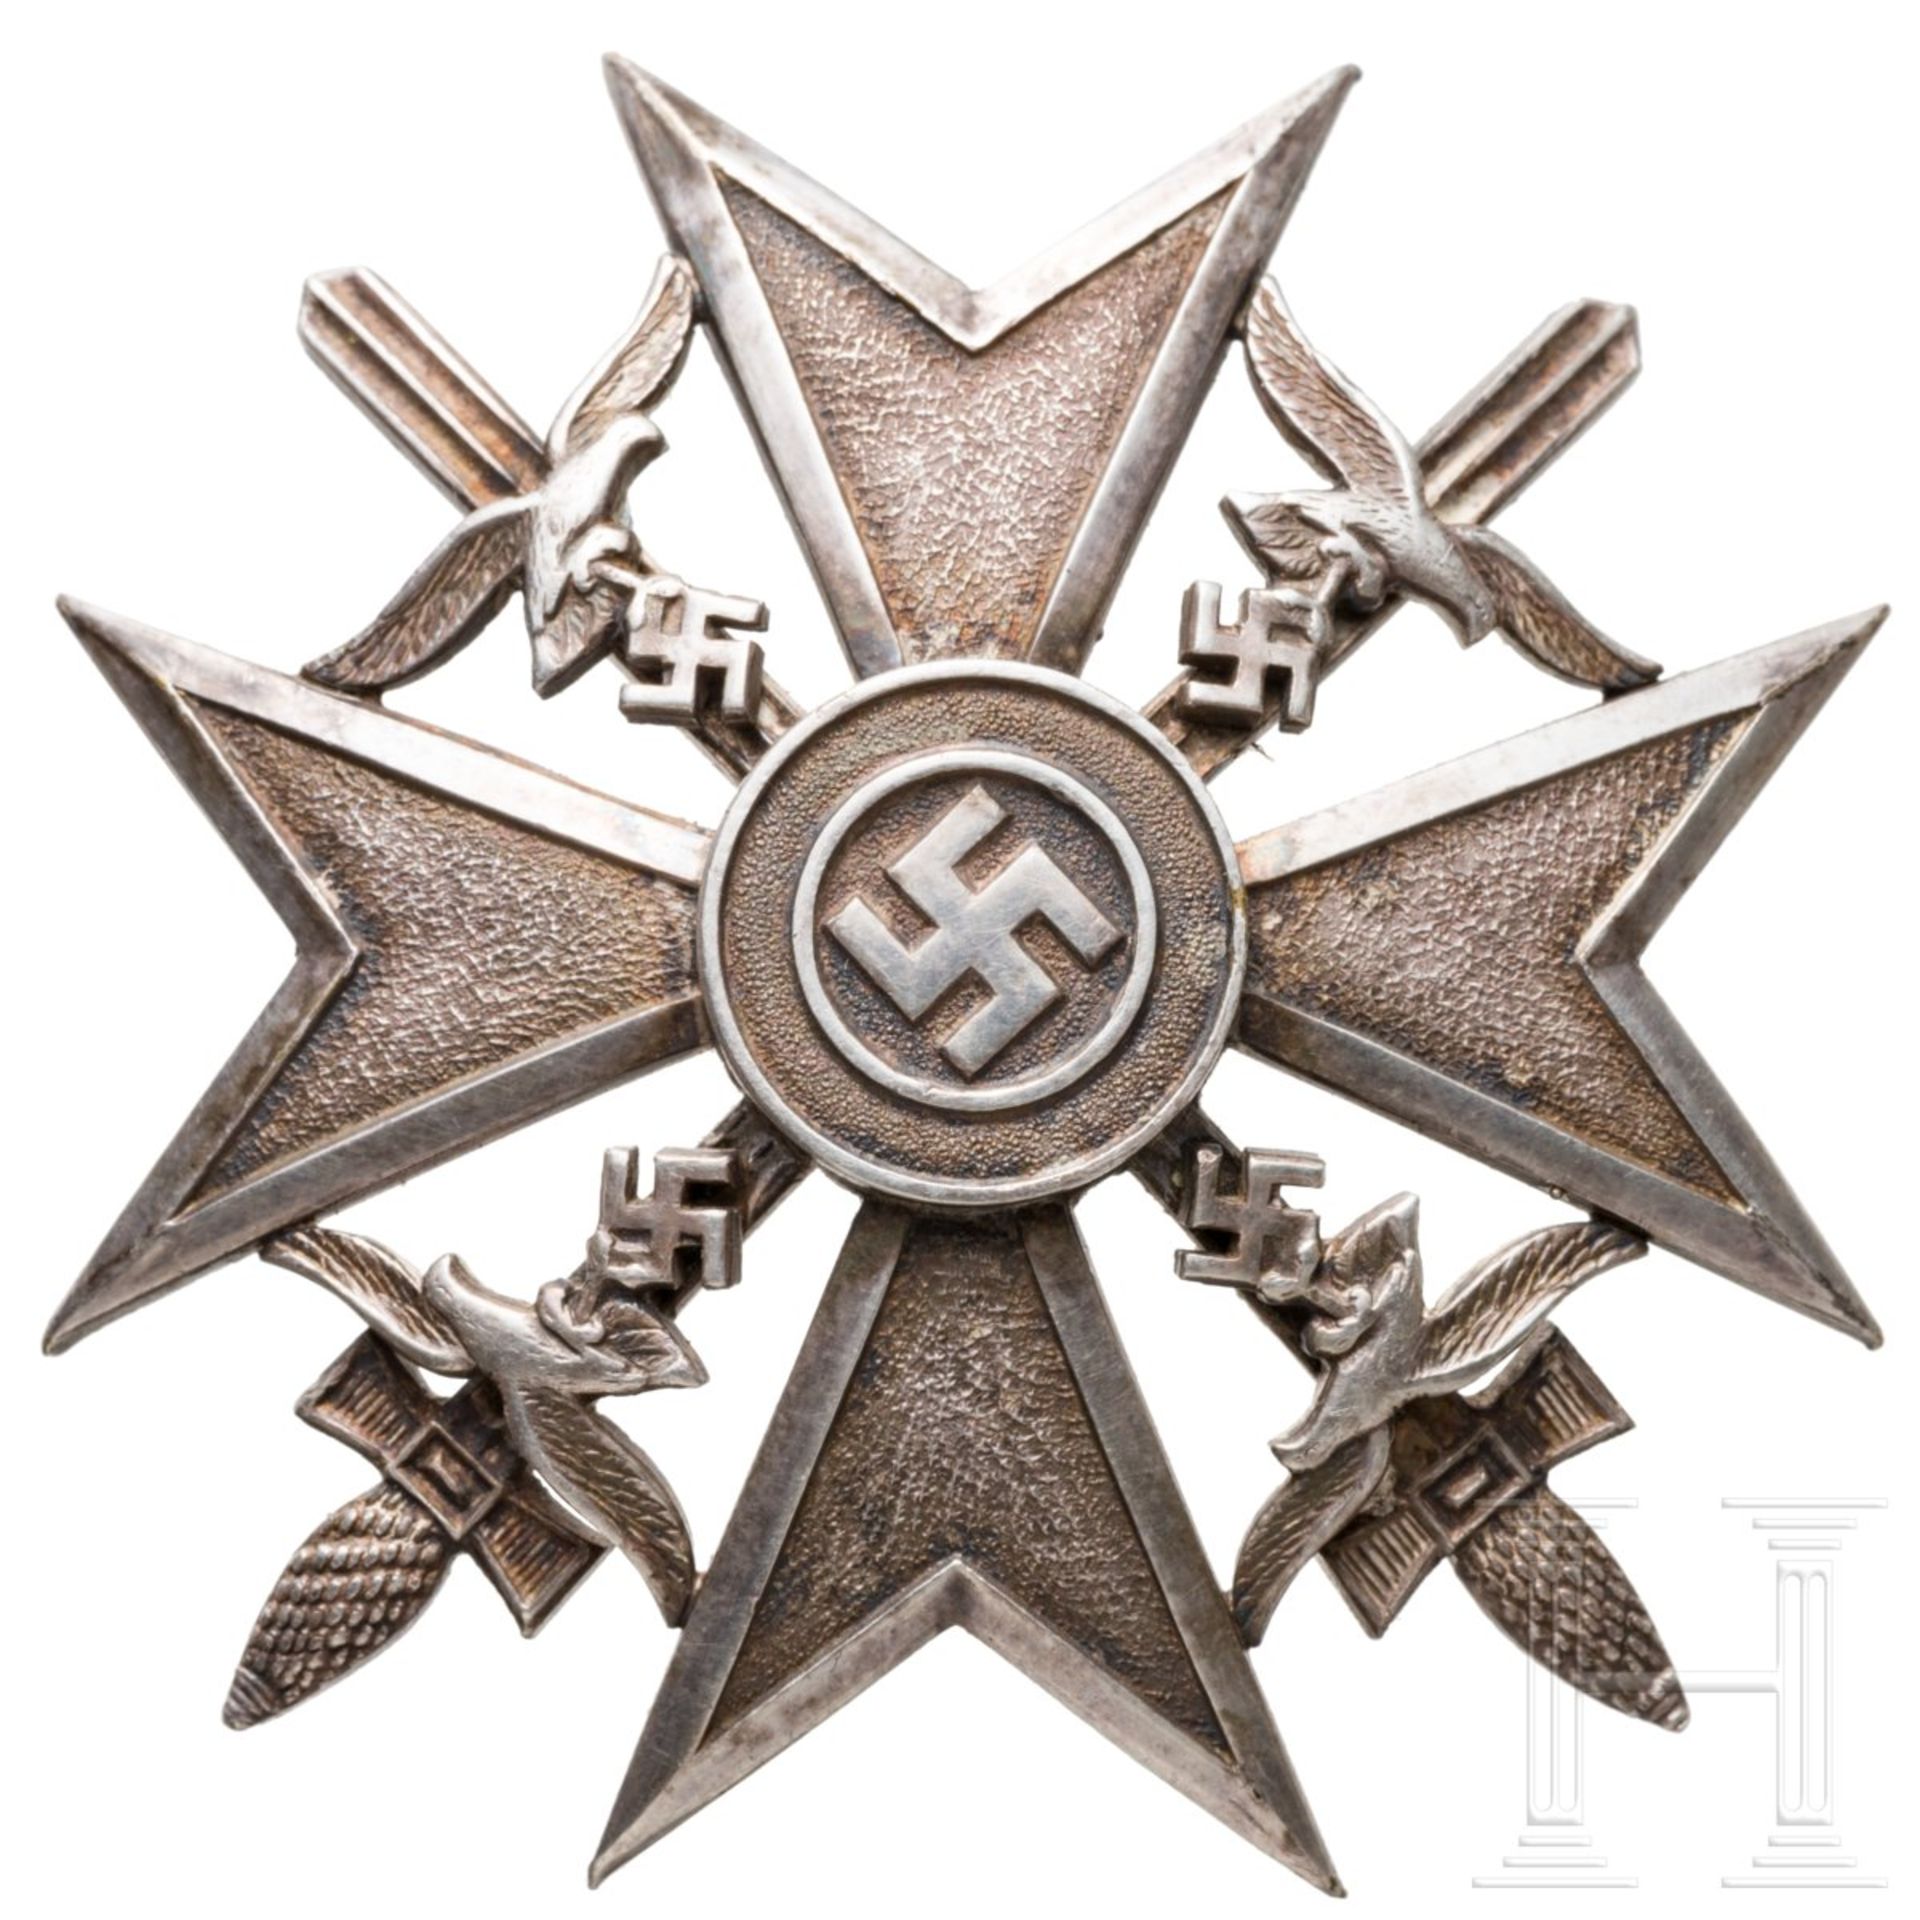 Spanienkreuz in Silber mit Schwertern, dazu Verleihungsurkunde - Bild 2 aus 3